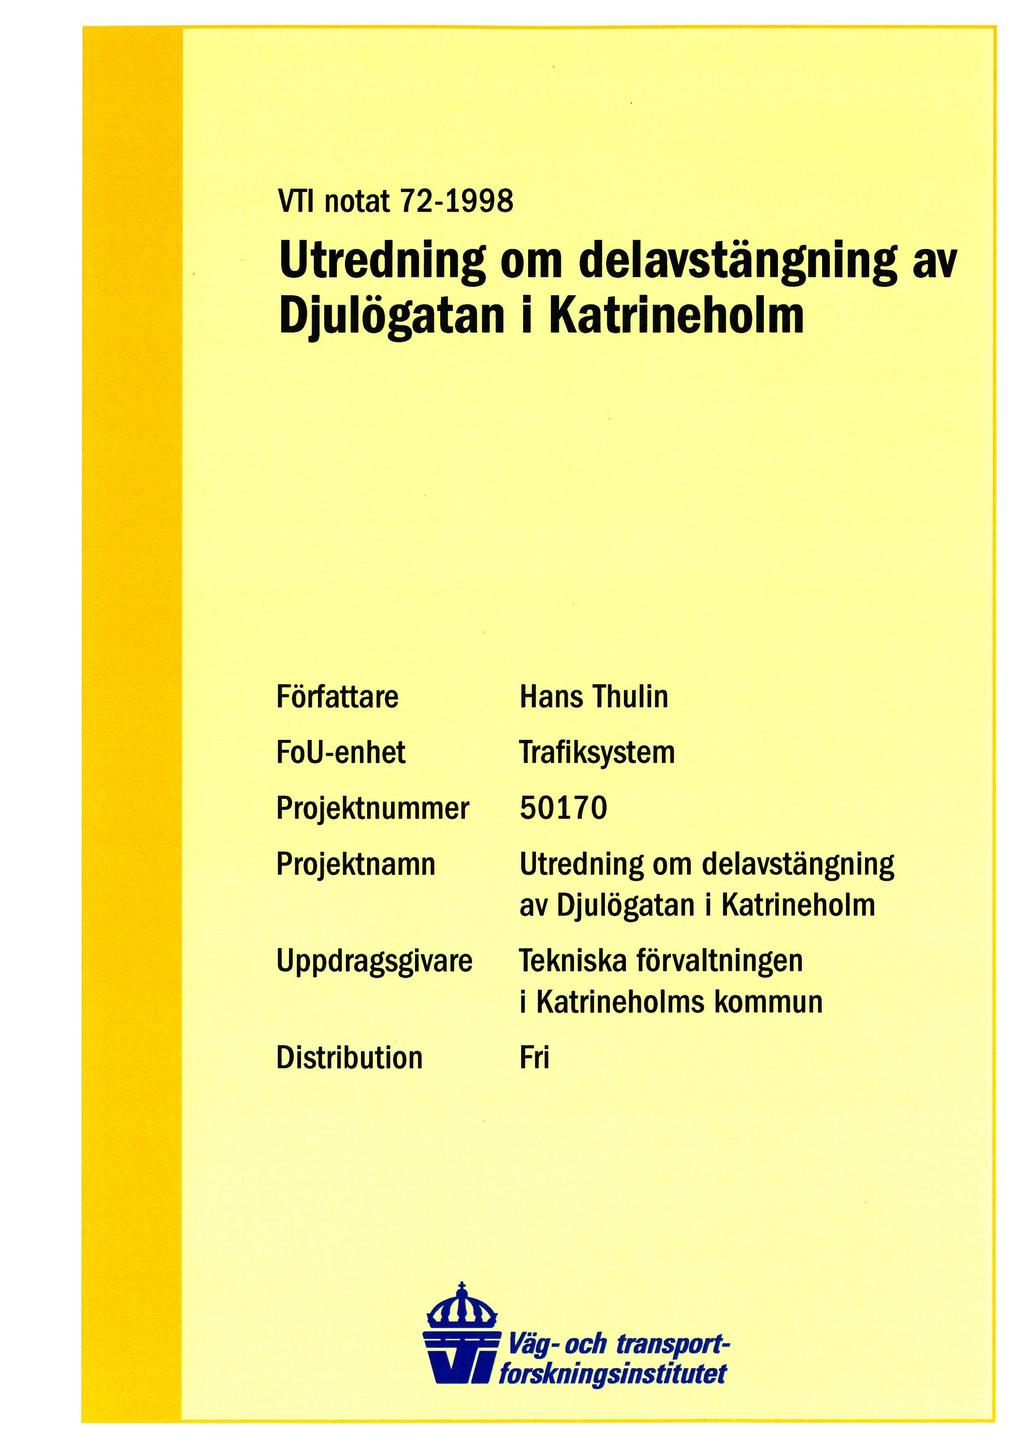 VTI. notat 72-1998 i Utredning omdelavstängning av Djulögatan i Katrineholm Författare FoU-en het Hans Thulin Trafiksystem Projektnummer 50170 Projektnamn